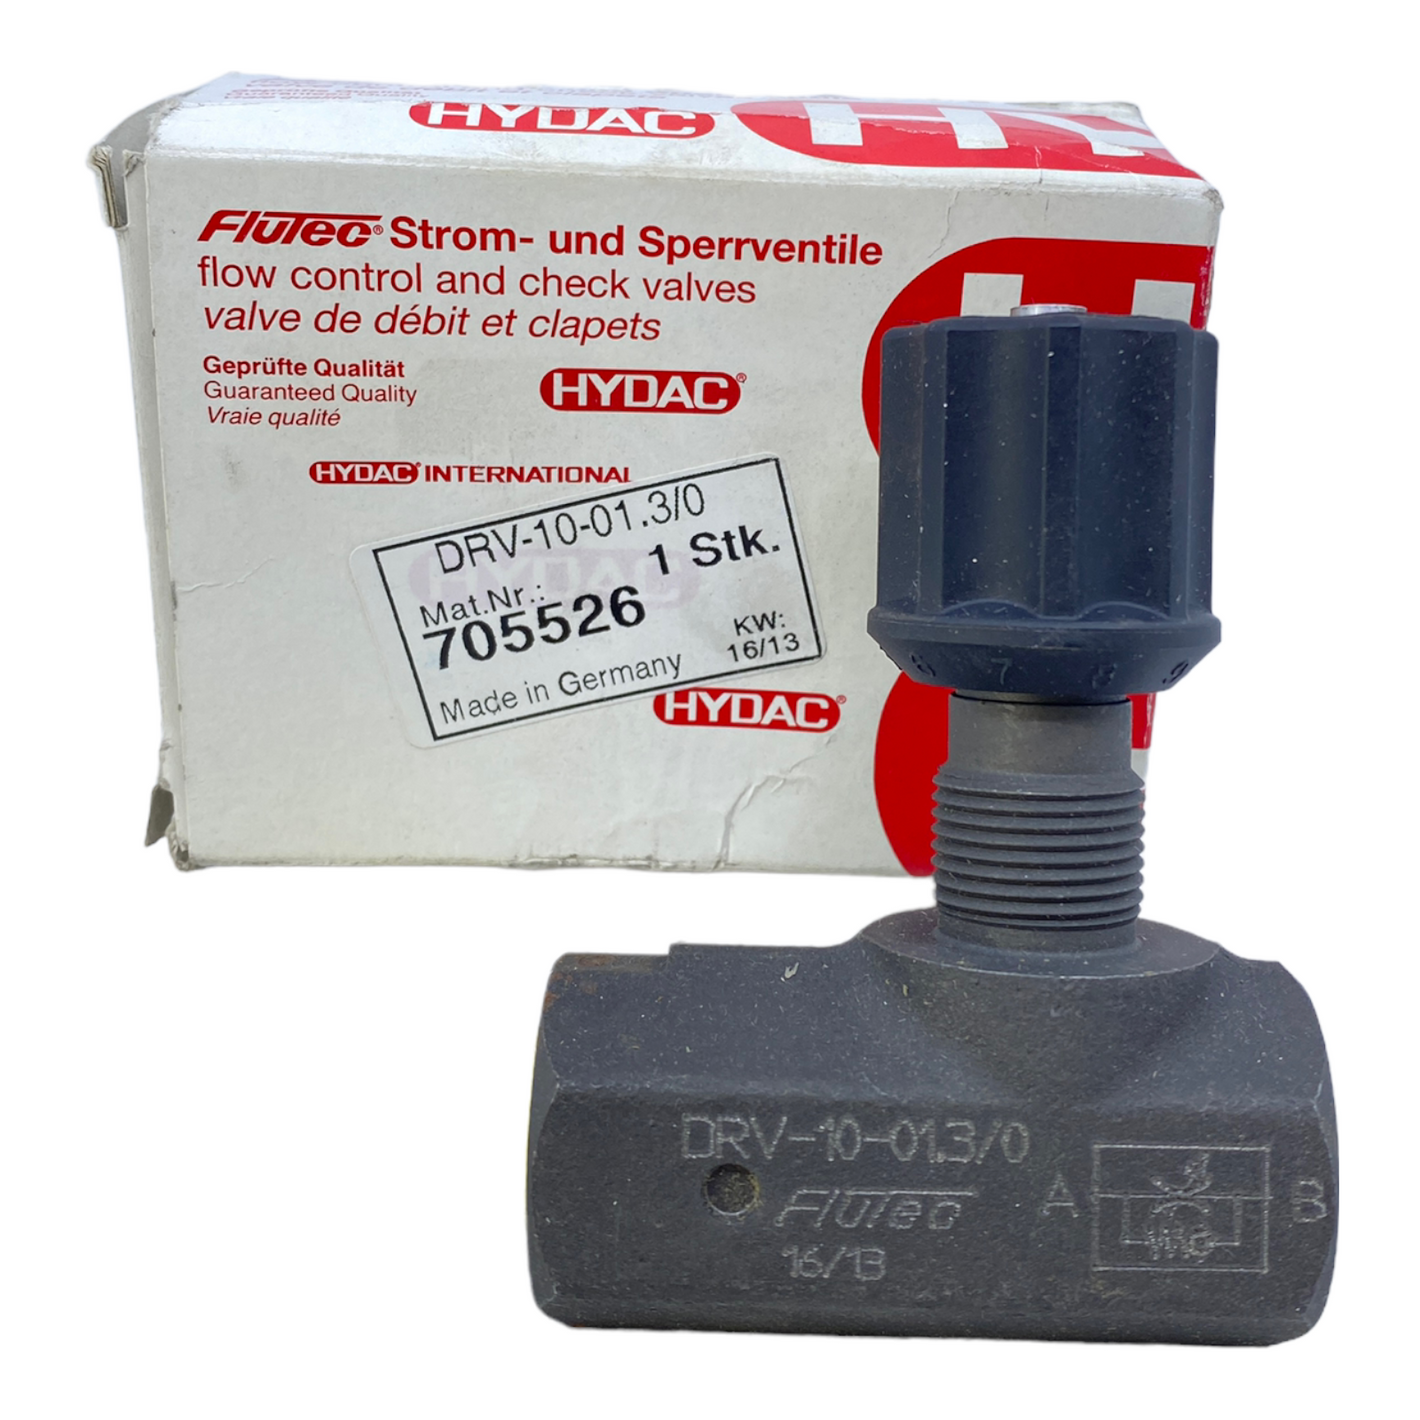 Hydac DRV-10-01.3/0 Rückschlagventil 705526